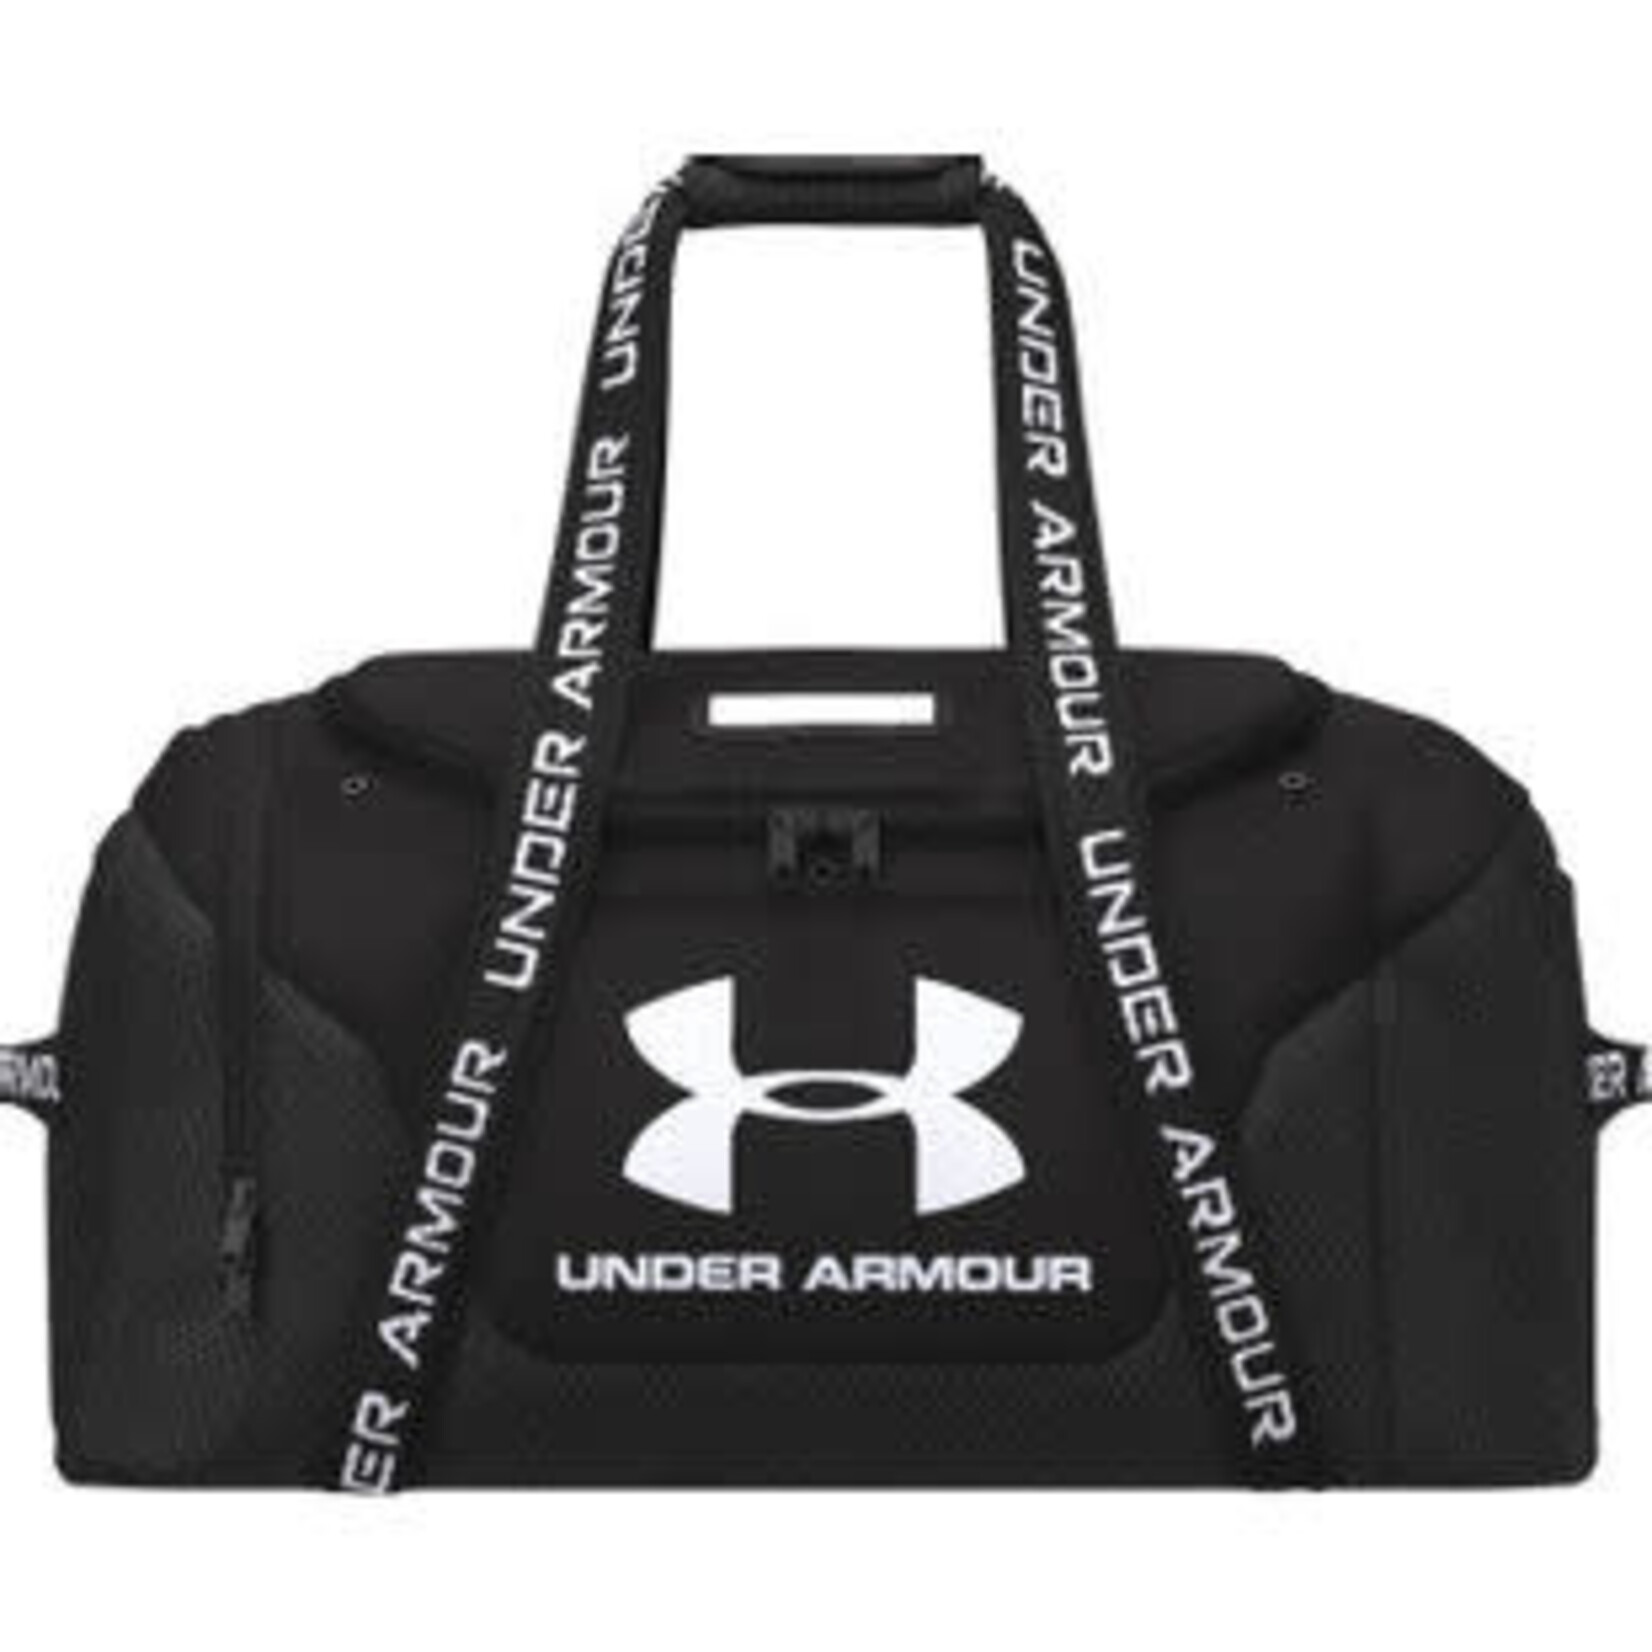 Under Armour Under Armour Hockey Bag, Equipment, OS